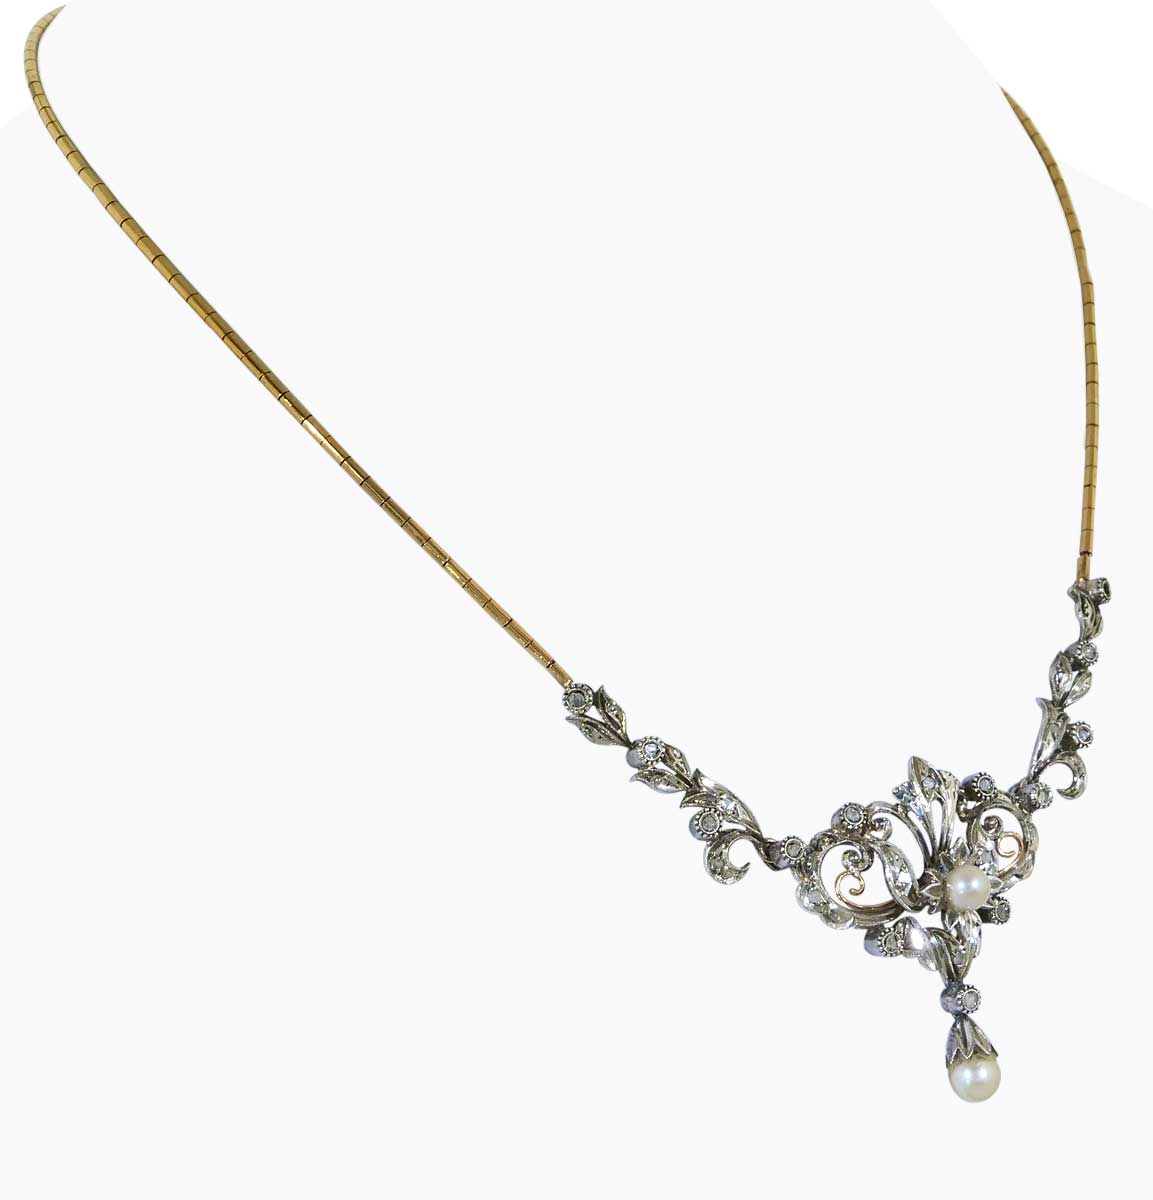 Collier mit 18Kt Goldkette, Mittelteil Silber/Golddubliert mit Rohdiamanten und Diamantrosen und Perlchen gefasst.